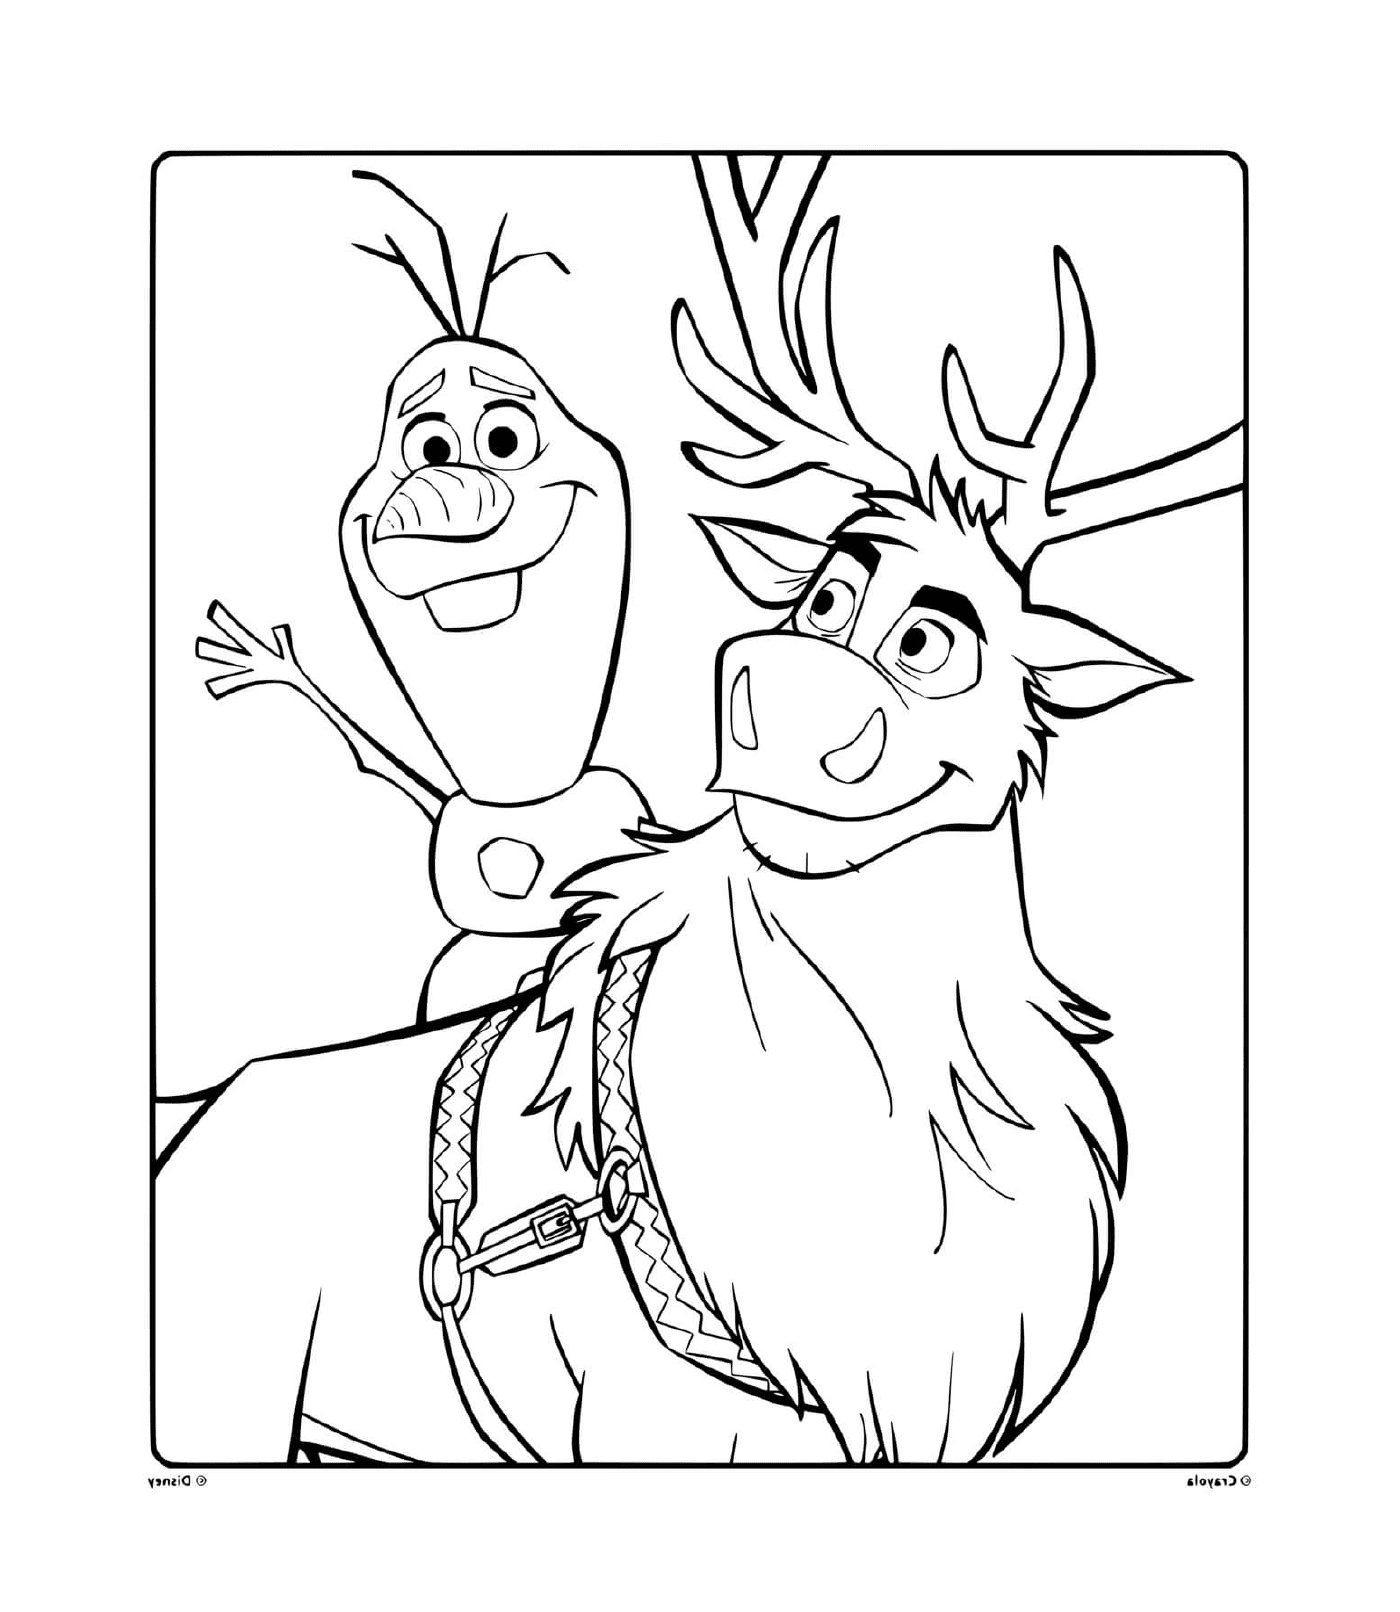  Olaf e Sven, compagni 